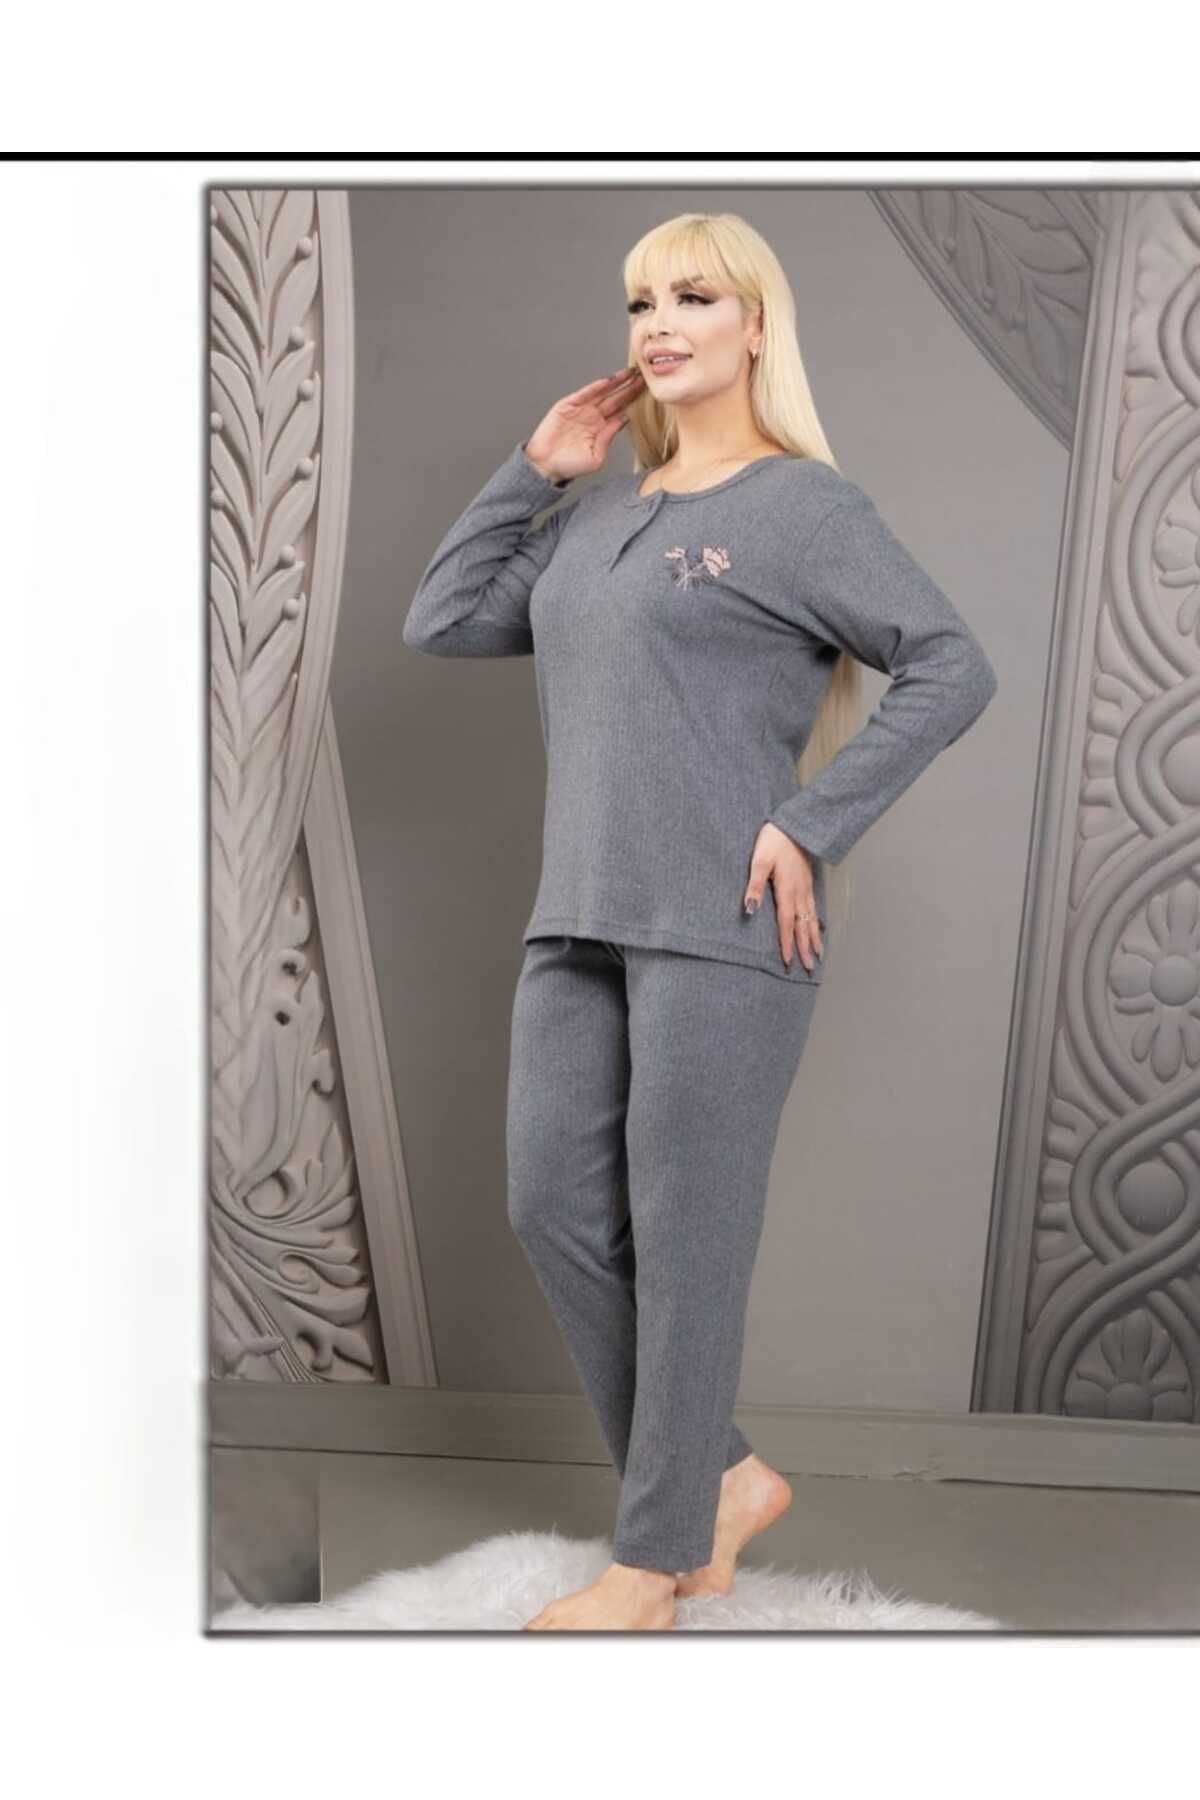 GOOD NİGHT interlok battal beden kışlık kadın pijama takımı